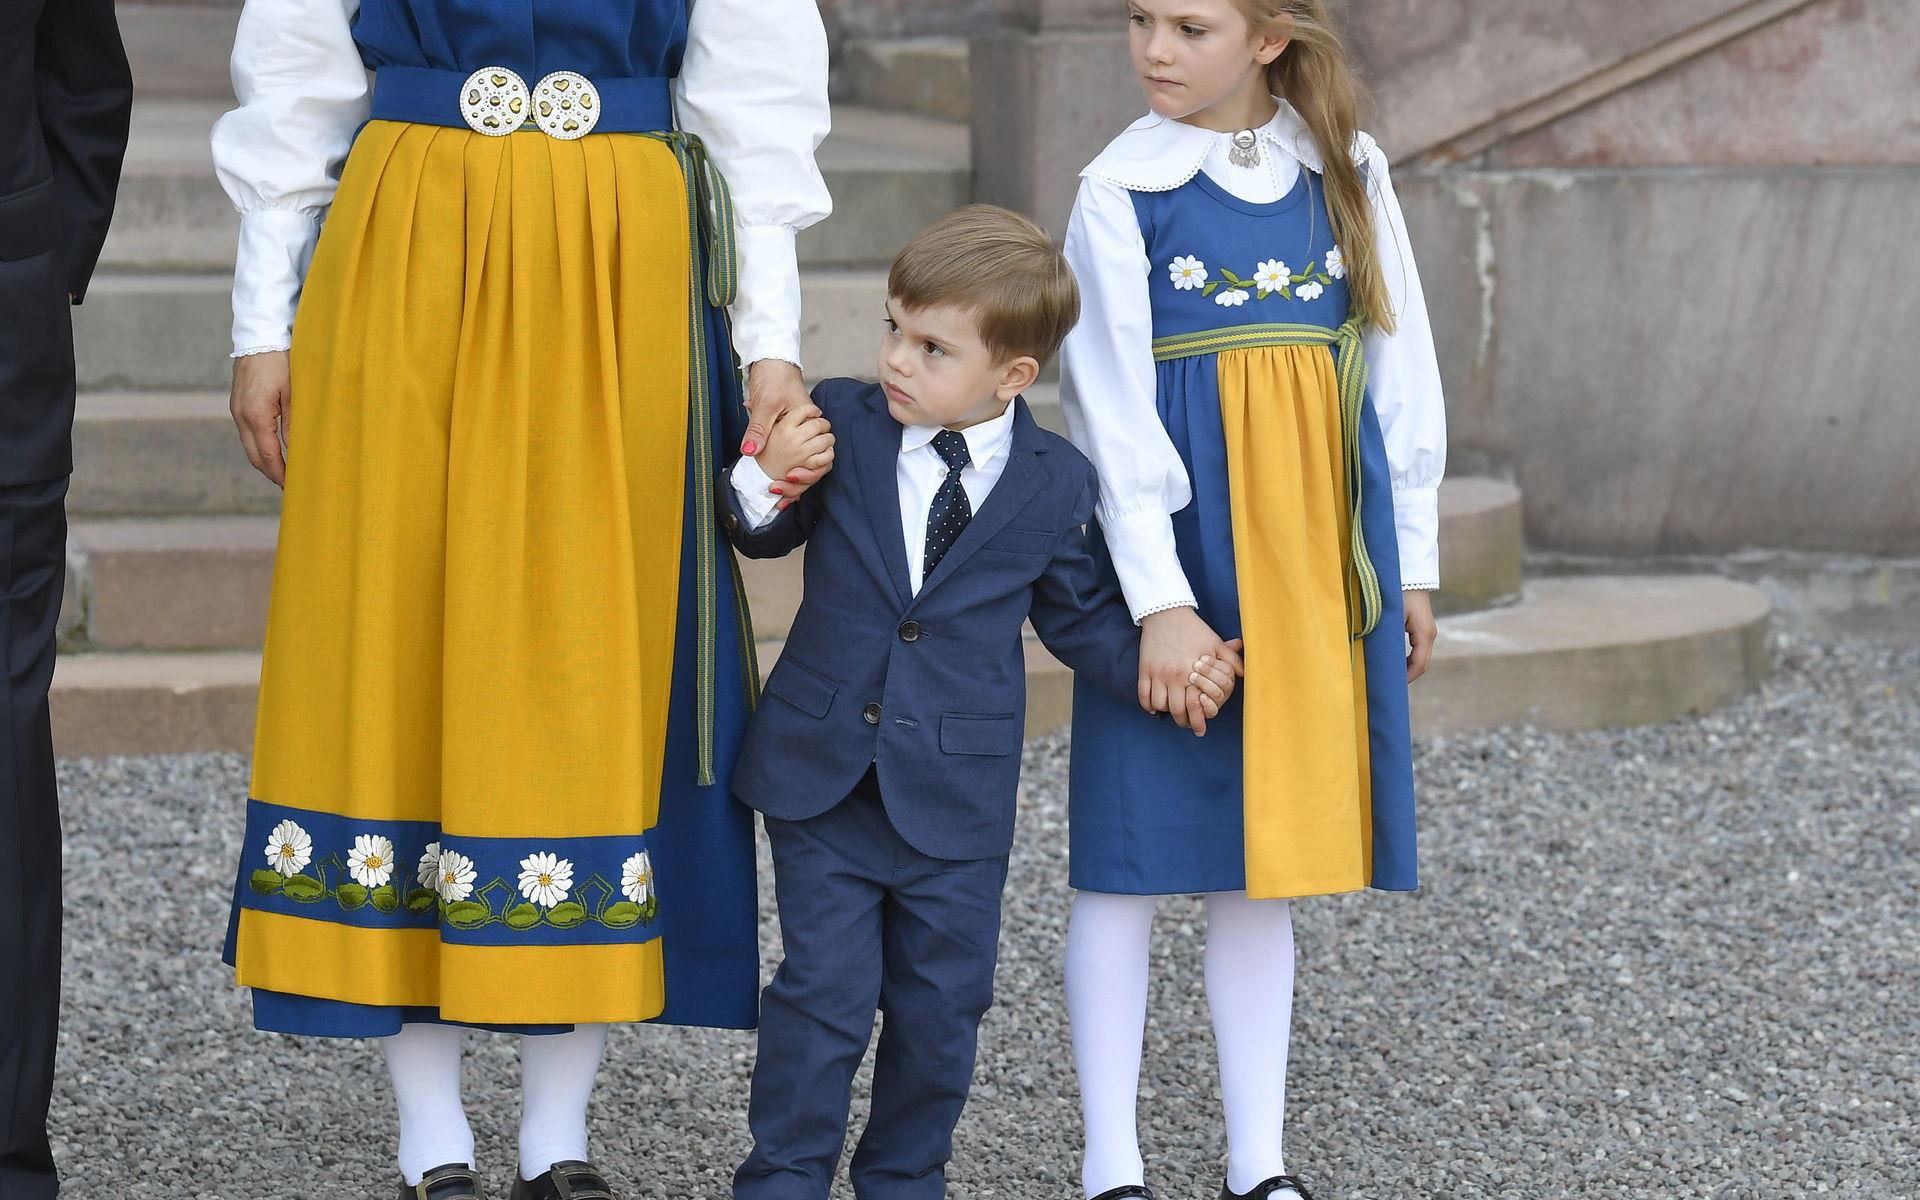 Prinsessan Estelle och prins Oscar kunde vi se för några dagar sedan på Stockholm slott i samband med nationaldagsfirandet.